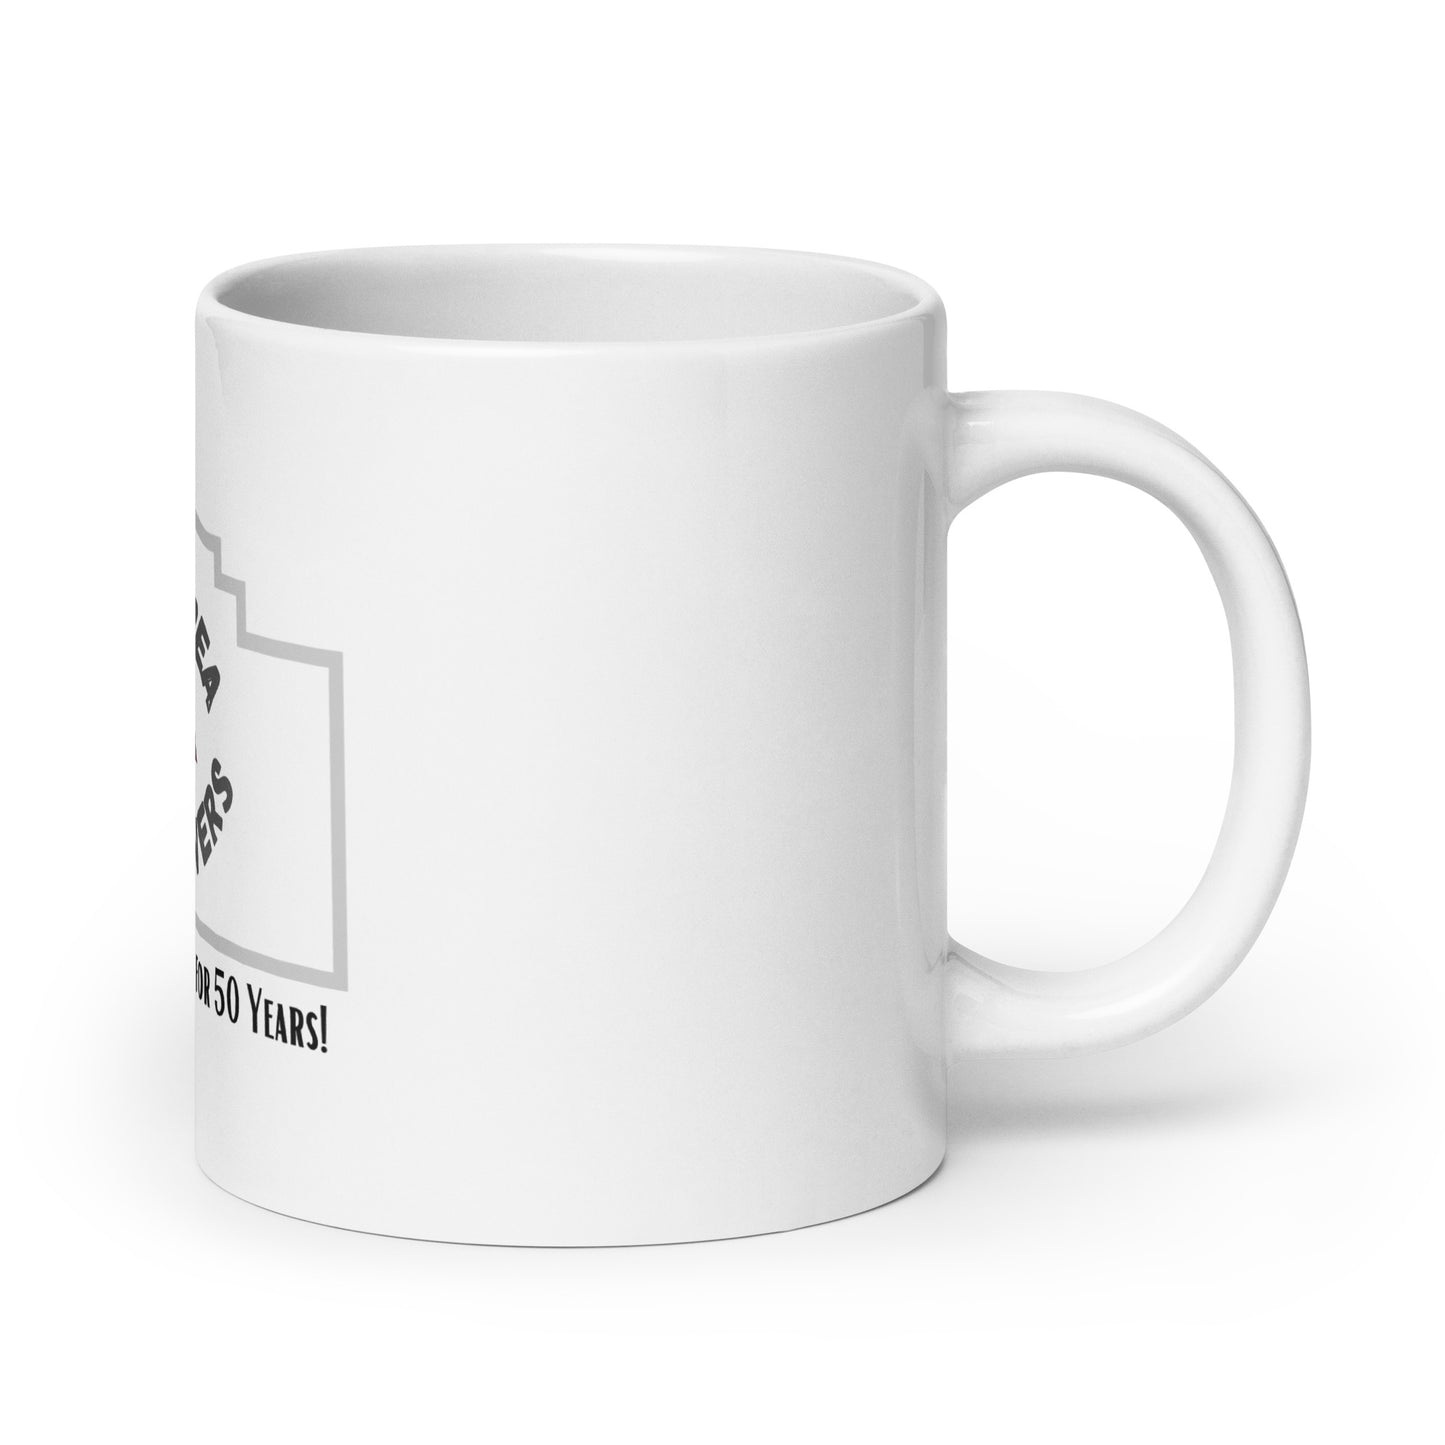 AAWC White glossy mug